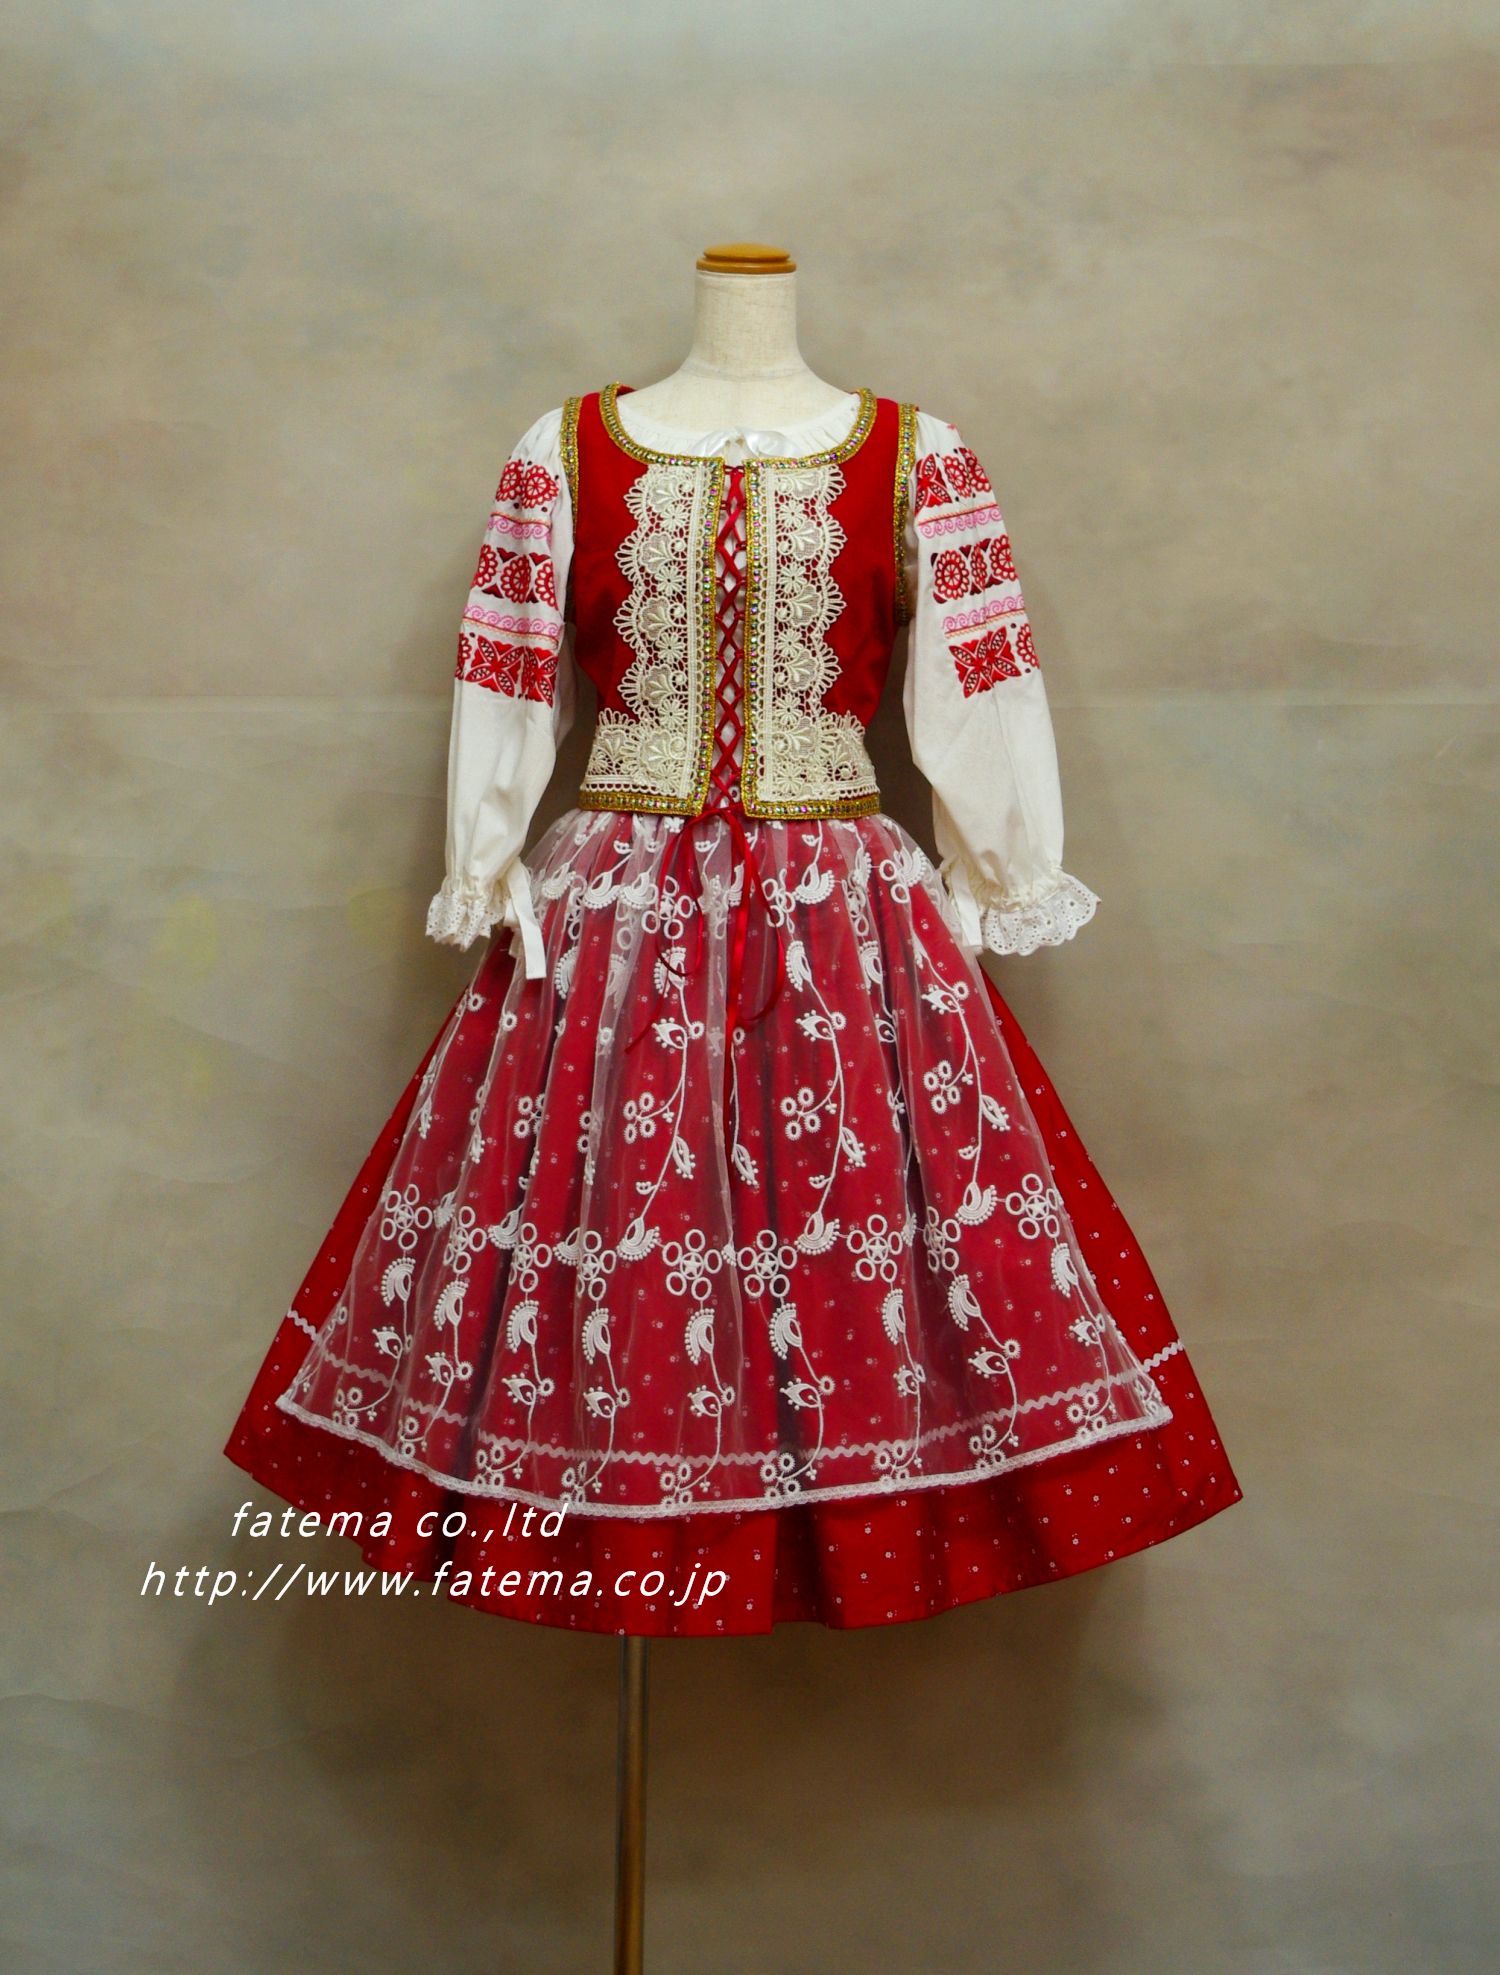 スロバキア民族衣装 10 民族衣装レンタルのファテマ Fatema